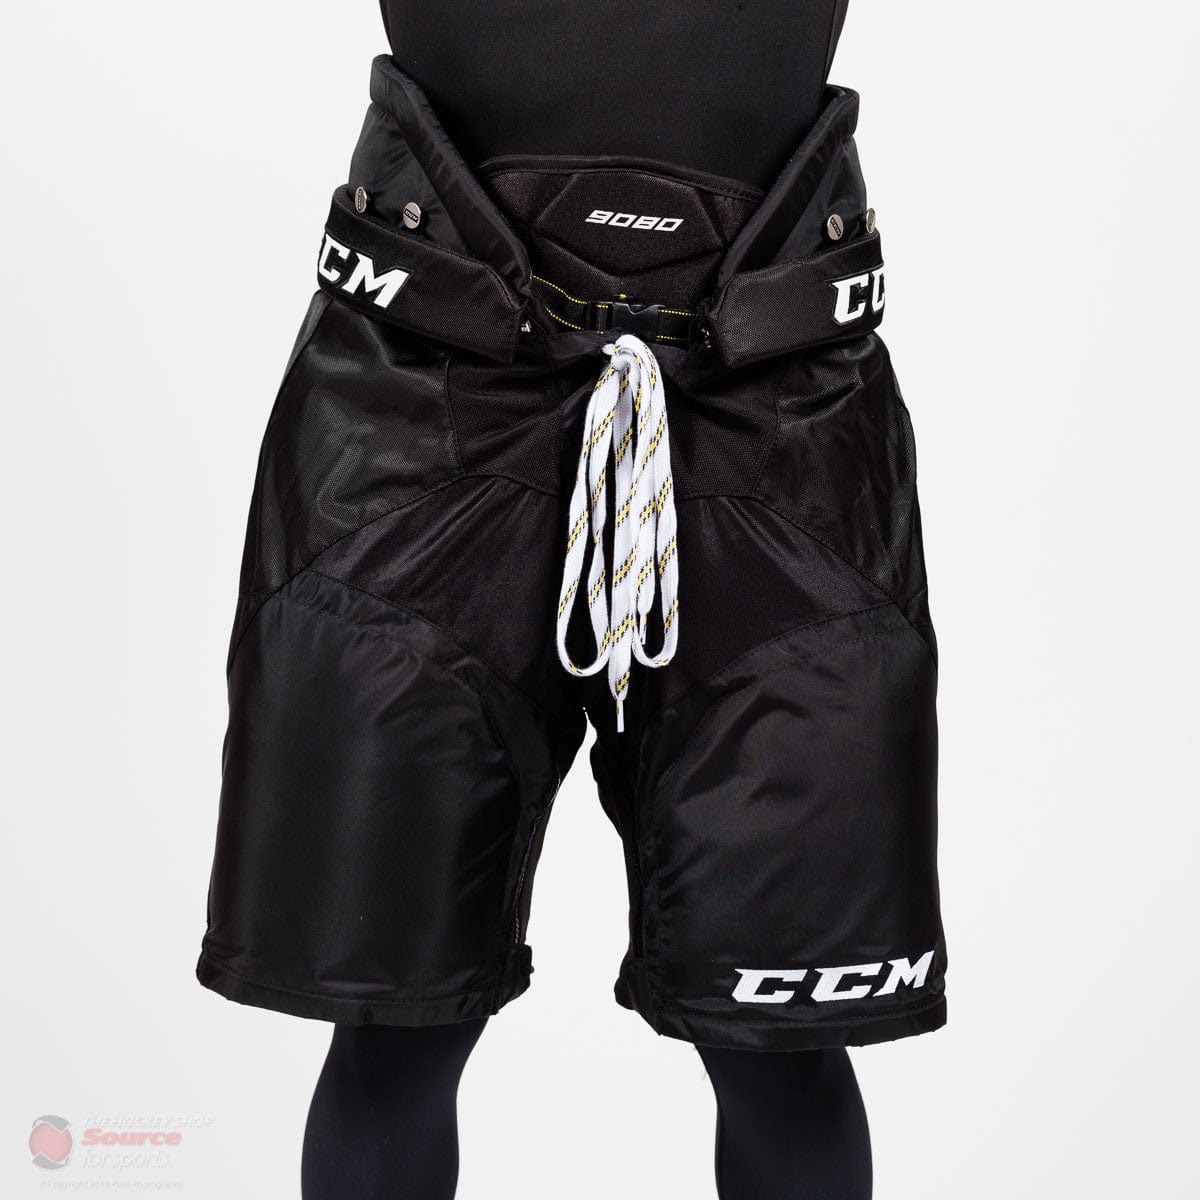 CCM Tacks 9080 Senior Hockey Pants